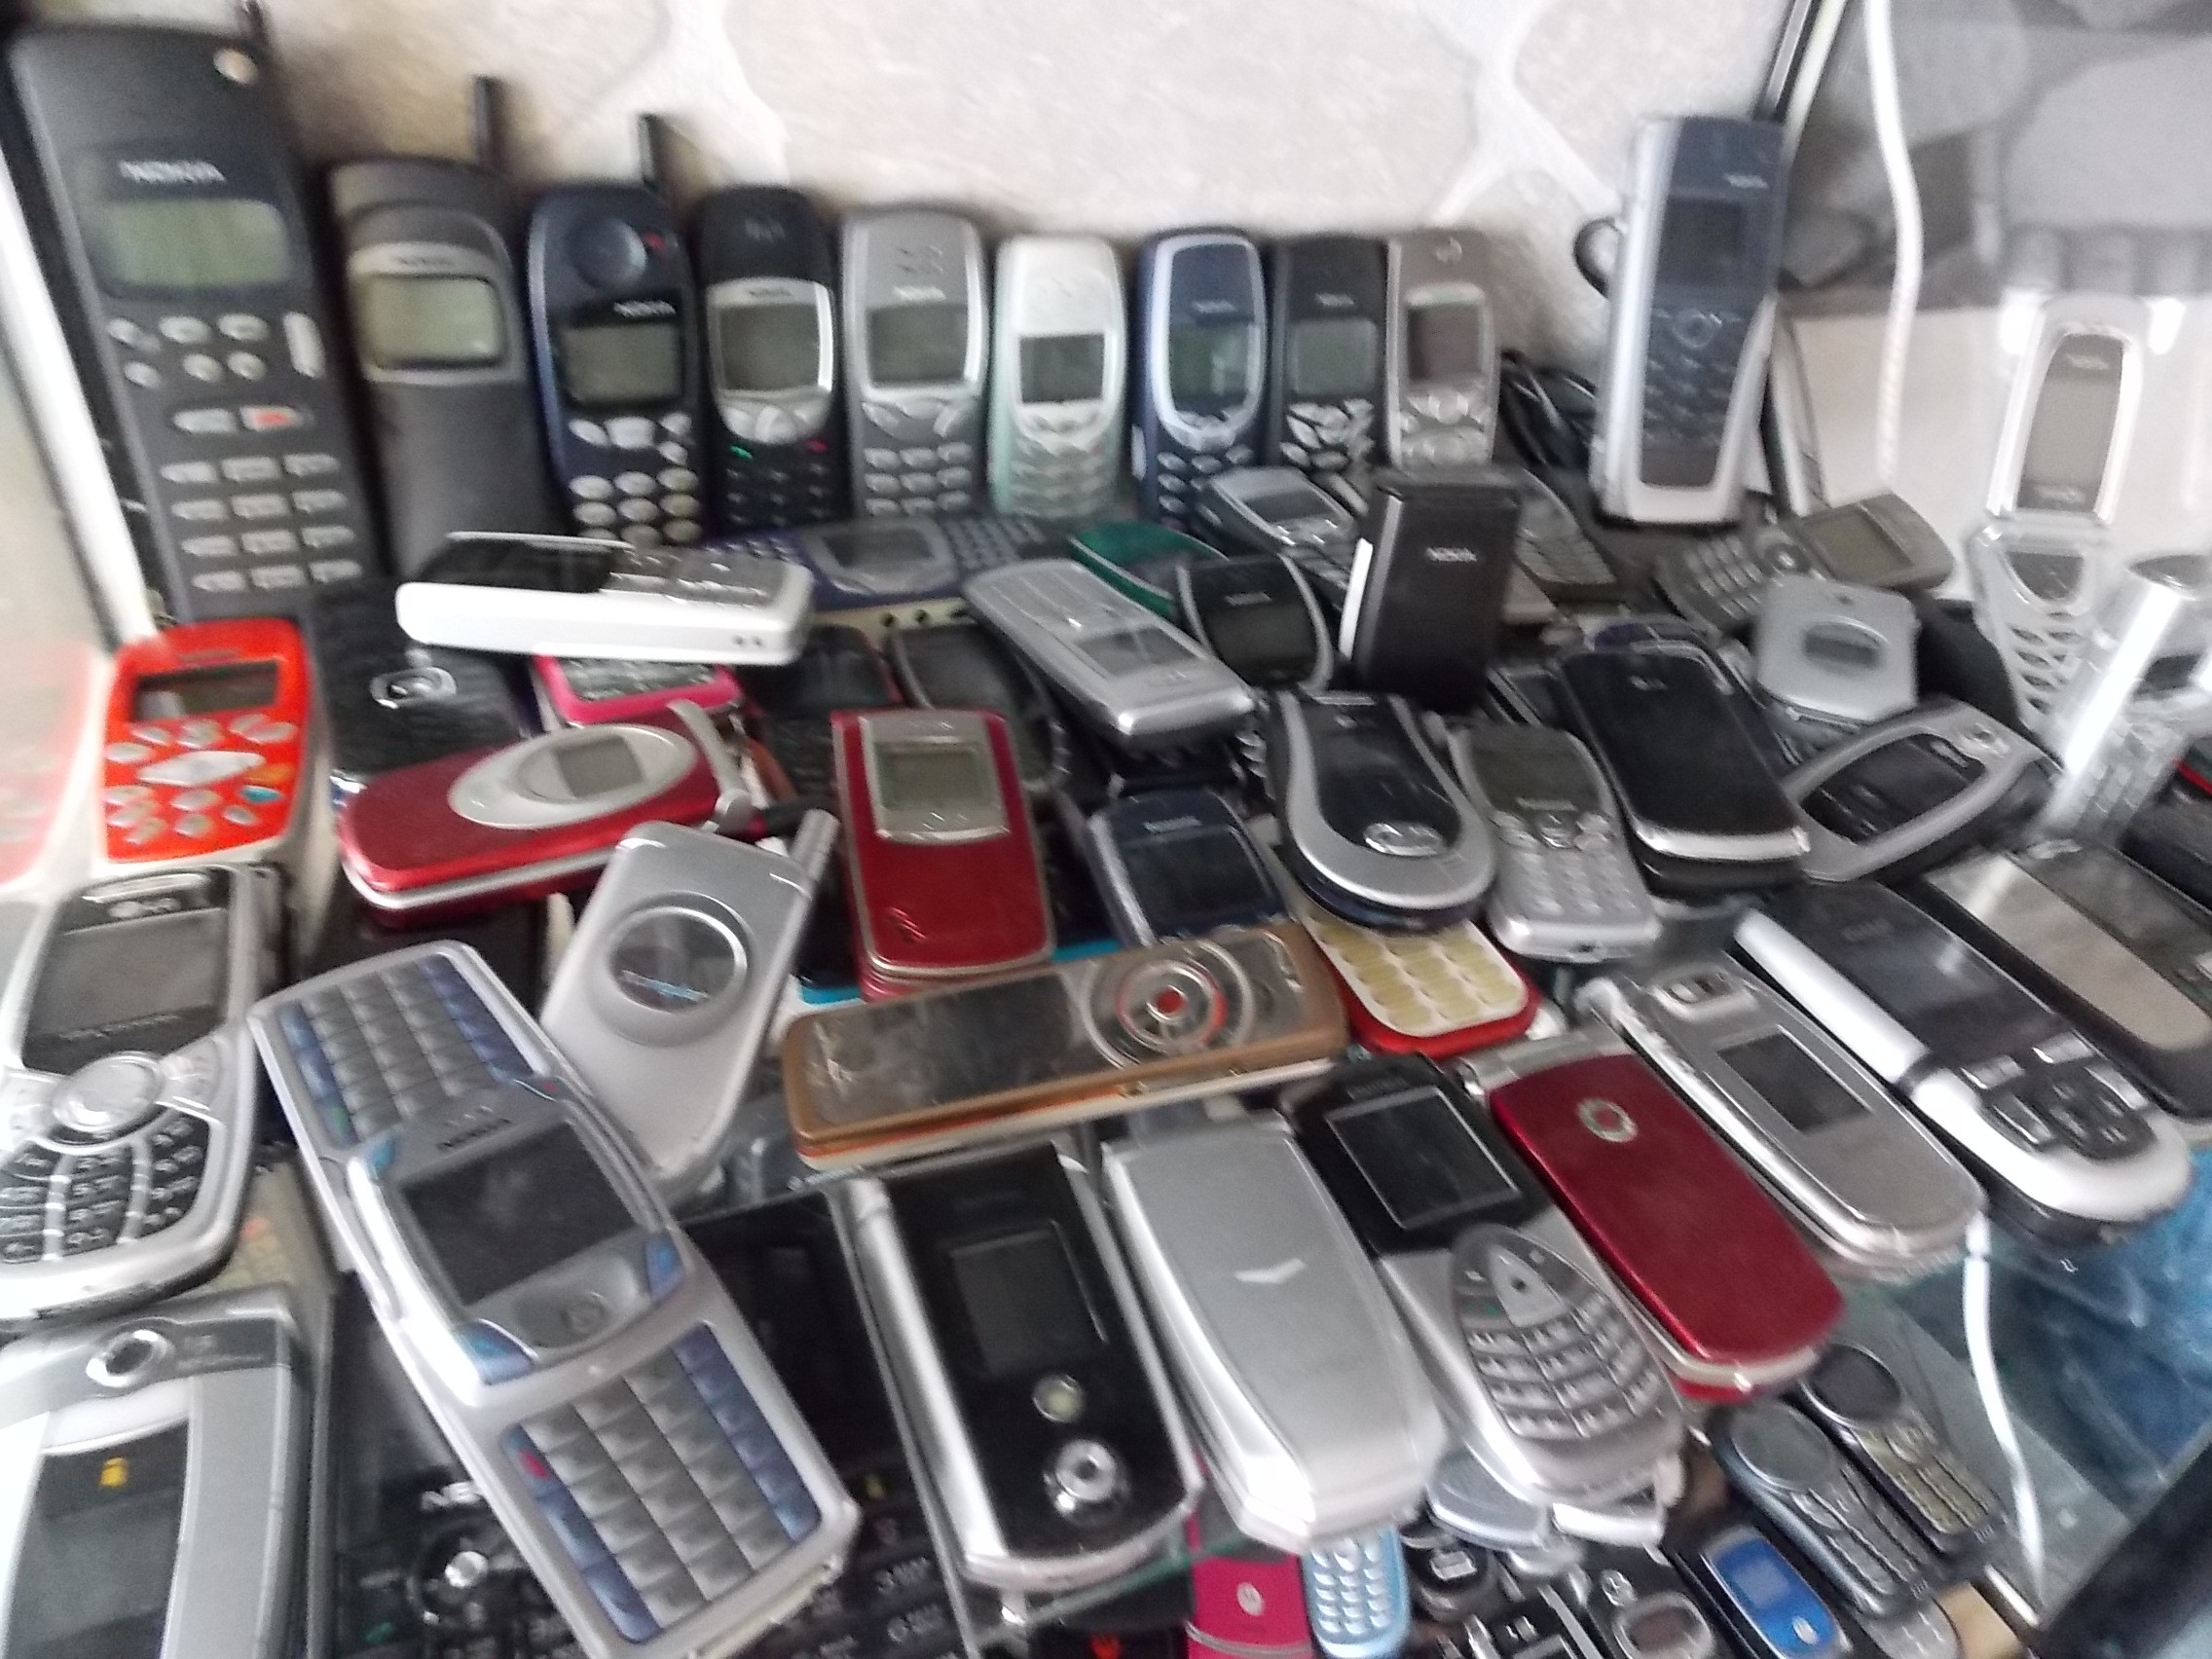 Продать телефон спб. Много телефонов. Коллекция мобильных телефонов. Много телефонов Nokia. Магазин старые Сотовые.